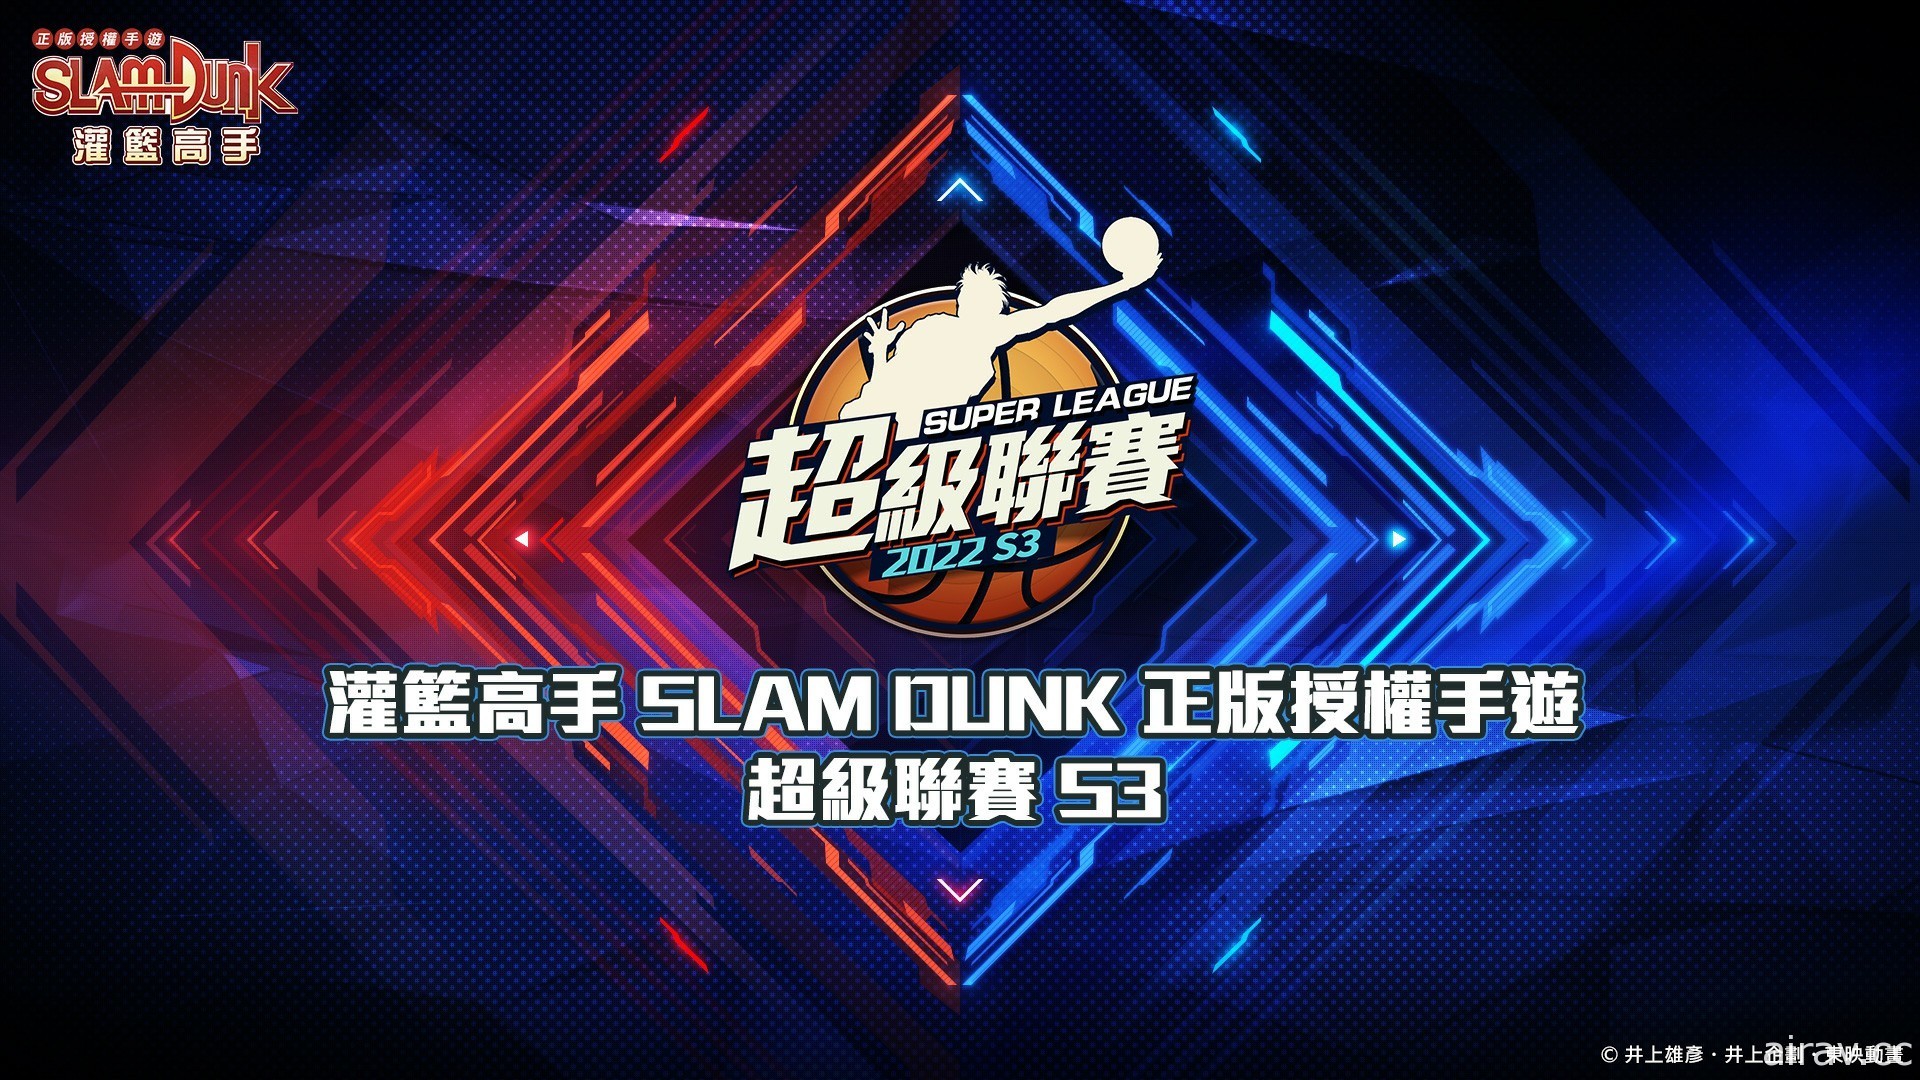 《灌籃高手 SLAM DUNK》花形透球員資料進階登場 同步推出全新特質潛能致勝決心